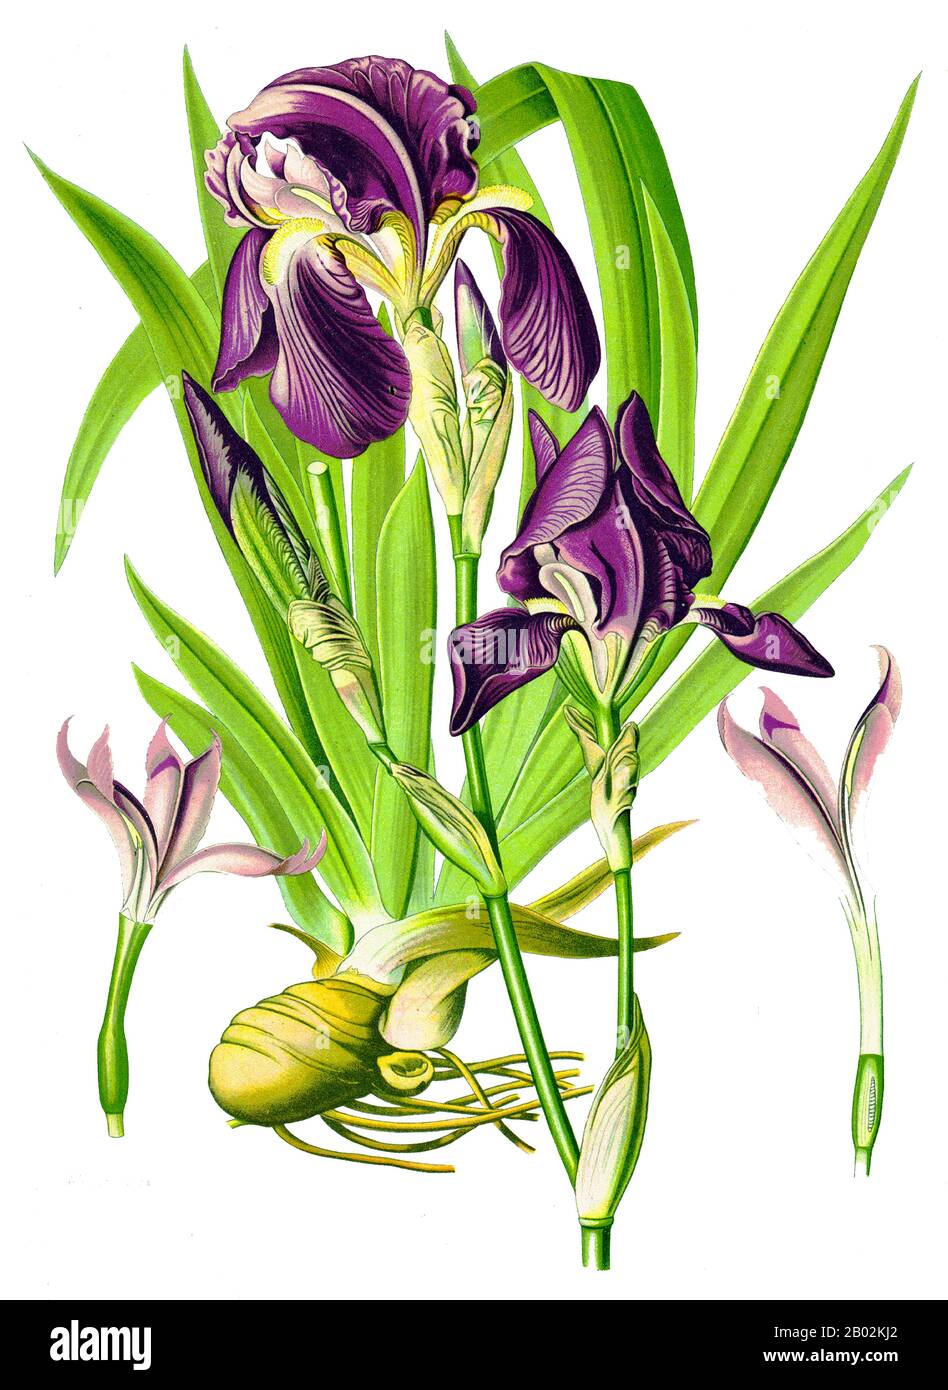 Iris germanica cultive jusqu'à 120 cm de haut et 30 cm de large. Les racines peuvent atteindre 10 cm de profondeur. C'est une vivace rhizomateuse qui fleurit d'avril à juin. Il est préférable de soulever, diviser et replanter les rhizomes une fois que la floraison est terminée car c'est lorsque la plante pousse les nouvelles pousses qui fleuriront l'année suivante. Des centaines d'hybrides représentent toutes les couleurs, du noir de jet aux blancs pétillants. La seule couleur vraiment manquante est le scarilet brillant. Banque D'Images